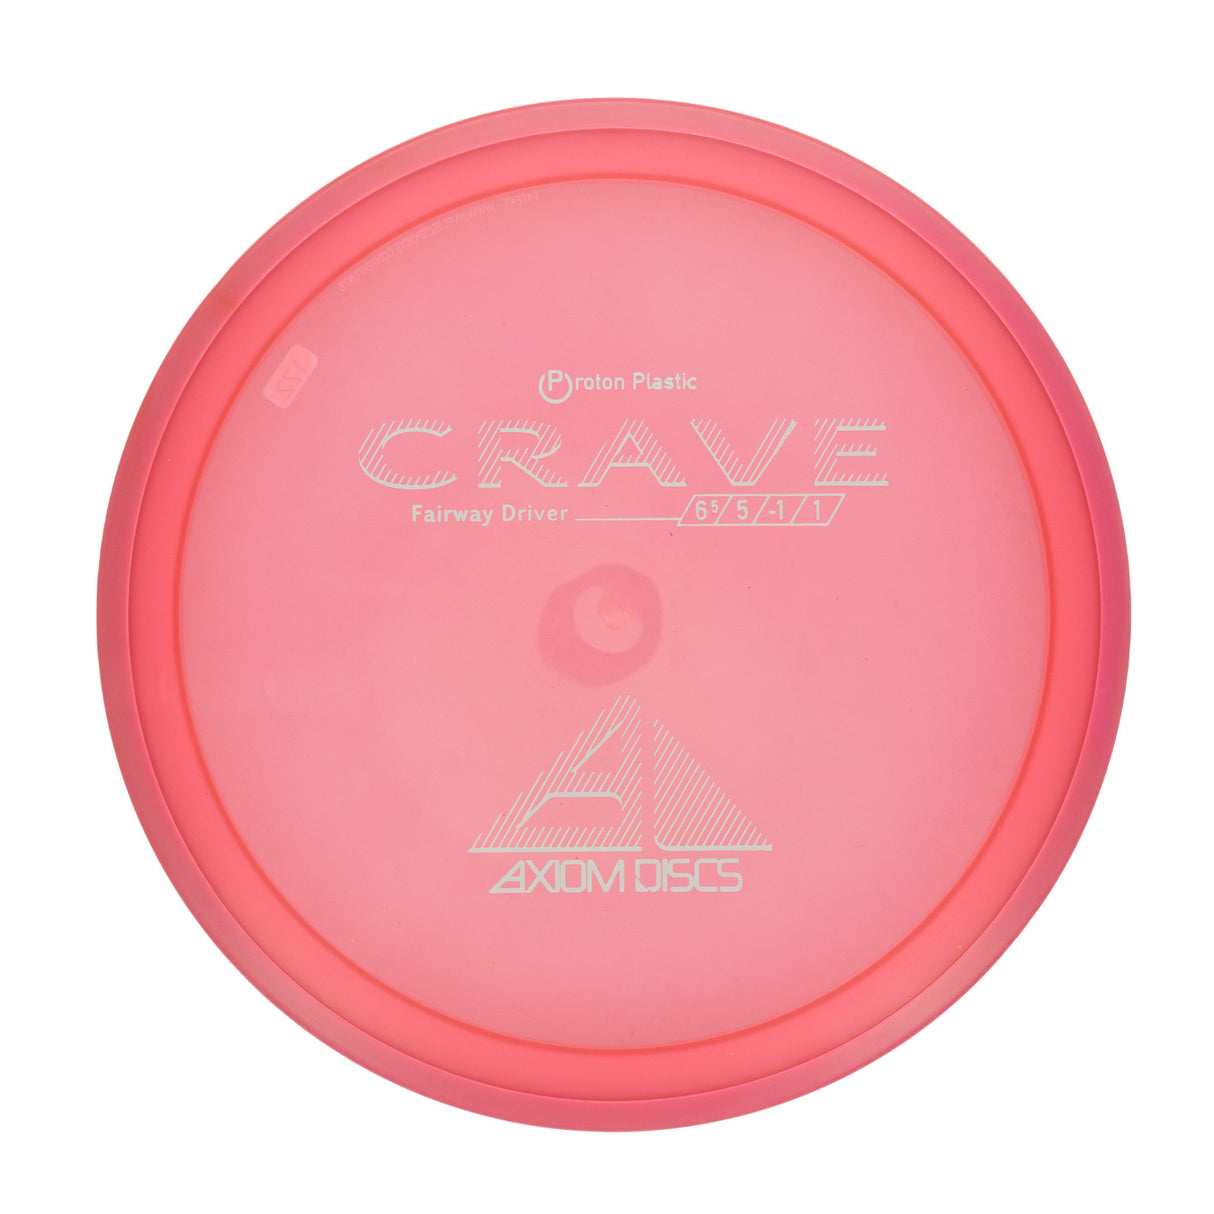 Axiom Crave - Proton 174g | Style 0001